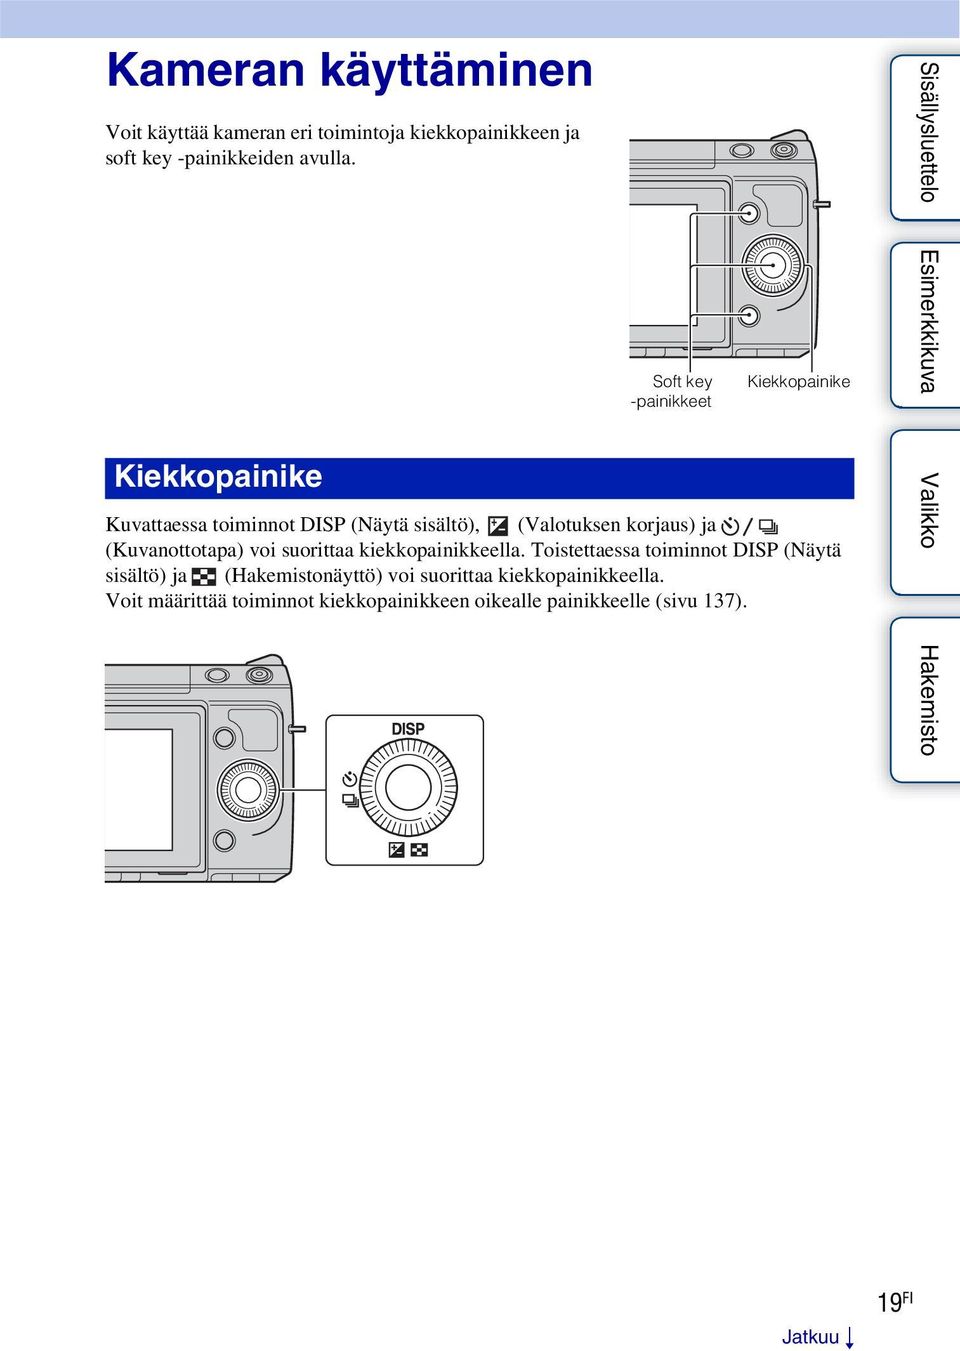 Kiekkopainike Soft key -painikkeet Kiekkopainike Kuvattaessa toiminnot DISP (Näytä sisältö), (Valotuksen korjaus) ja